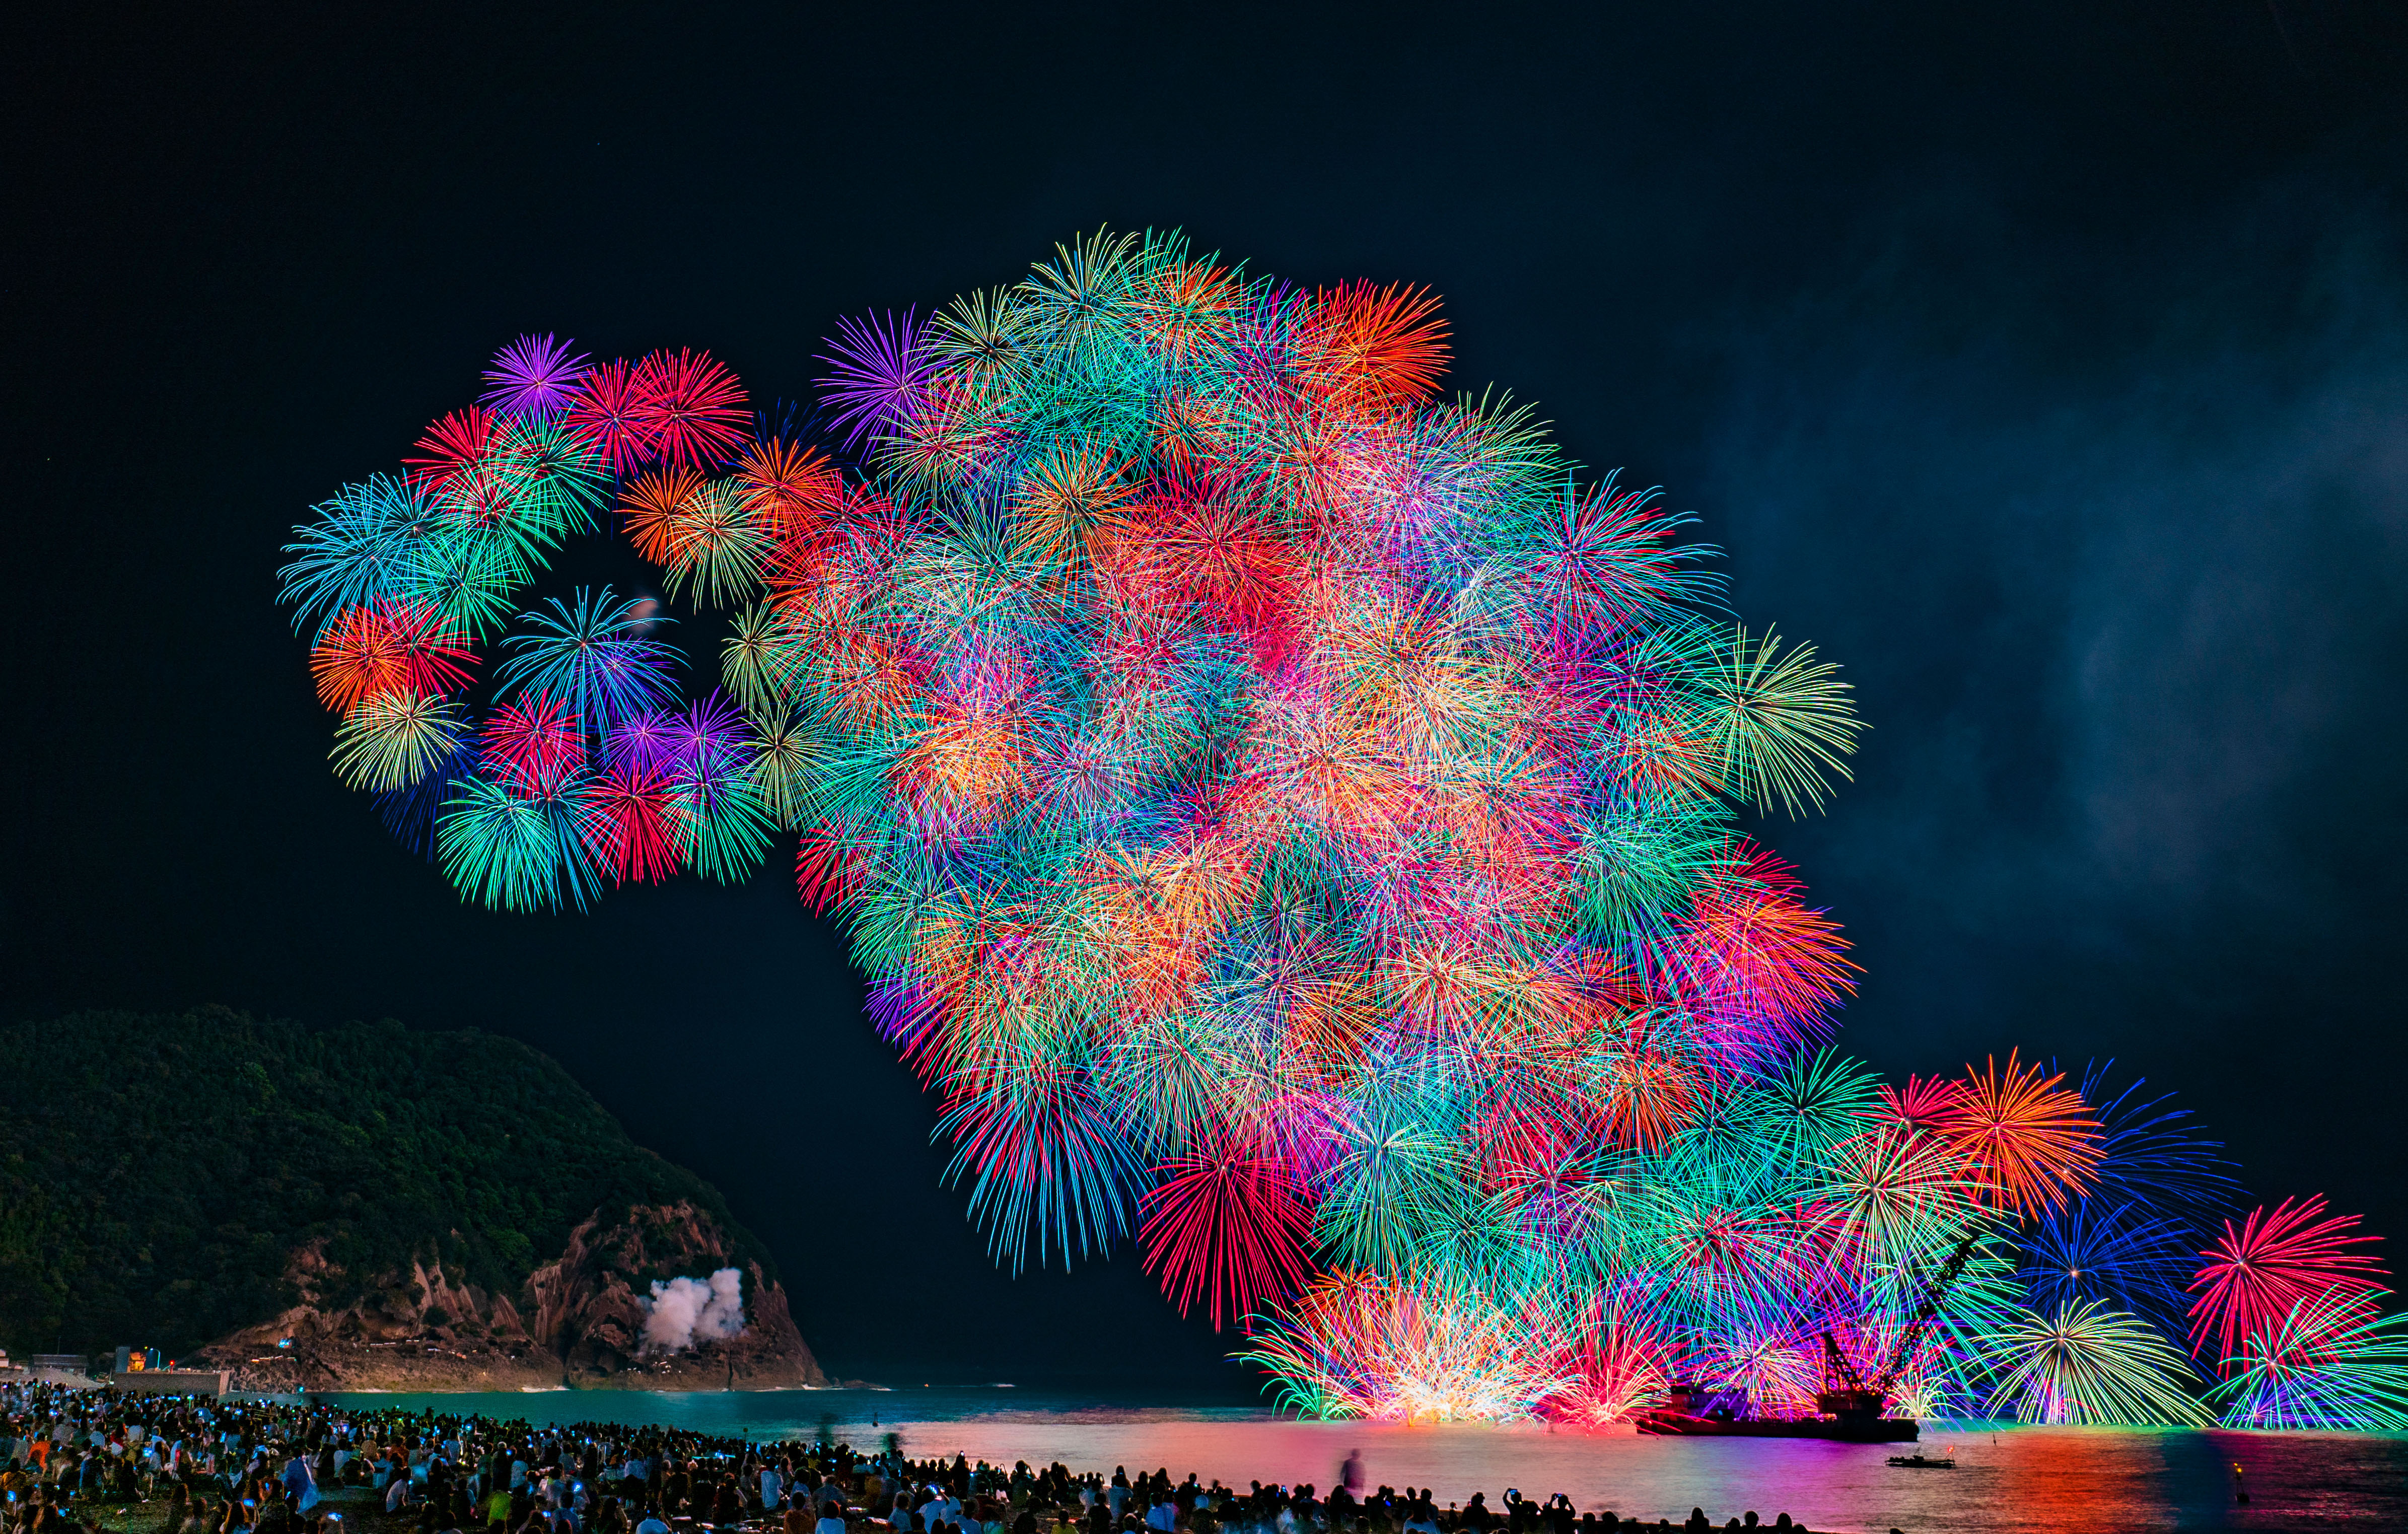 熊野花火大会の写真「鬼ヶ城大仕掛け」 | 三重の風景写真なら三重 